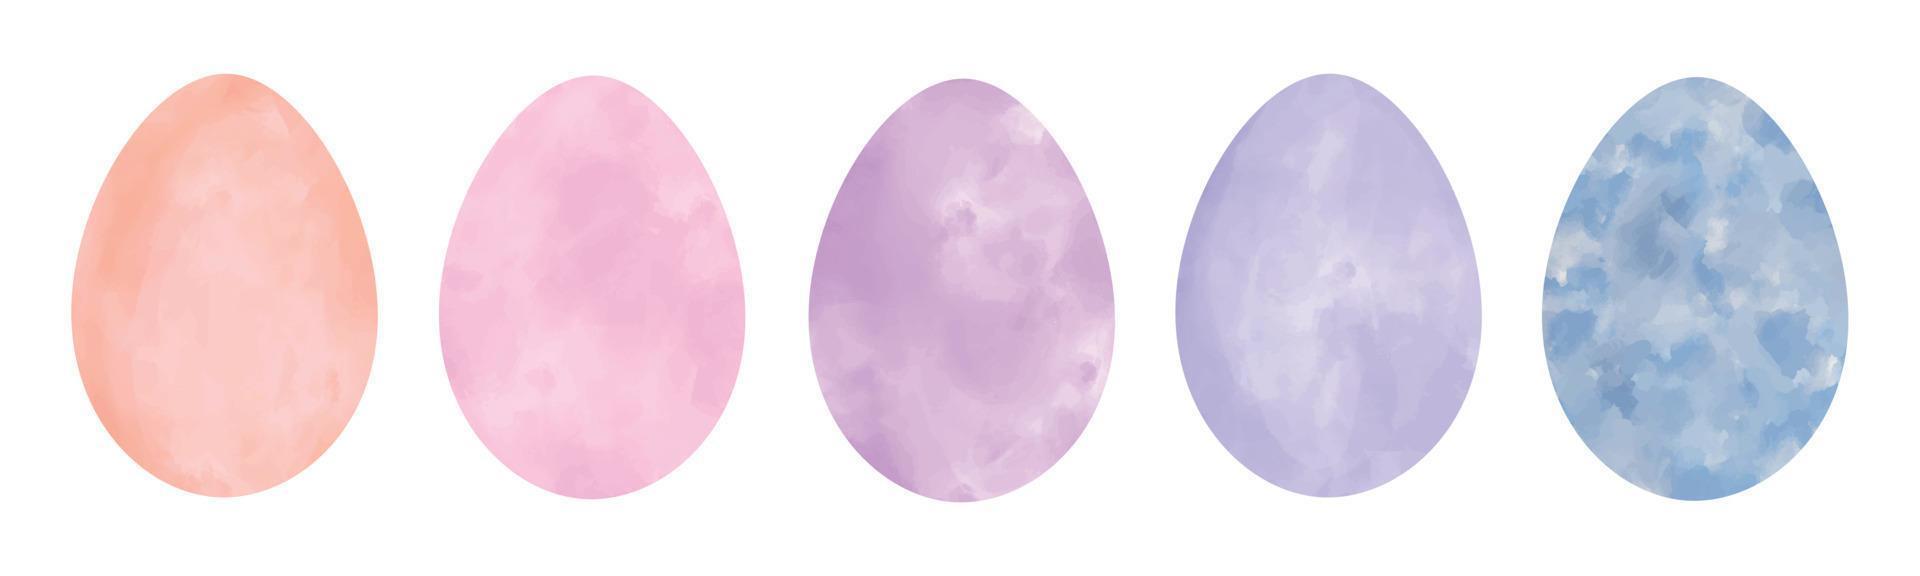 Satz von Aquarell texturierten Vektor pastellfarbenen Ostereiern. handgemalte frühlingswasserfarbclipart-elementsammlung lokalisiert auf weißem hintergrund. beige, rosa, lila, blaue aquarellfarbene Frühlingseier.